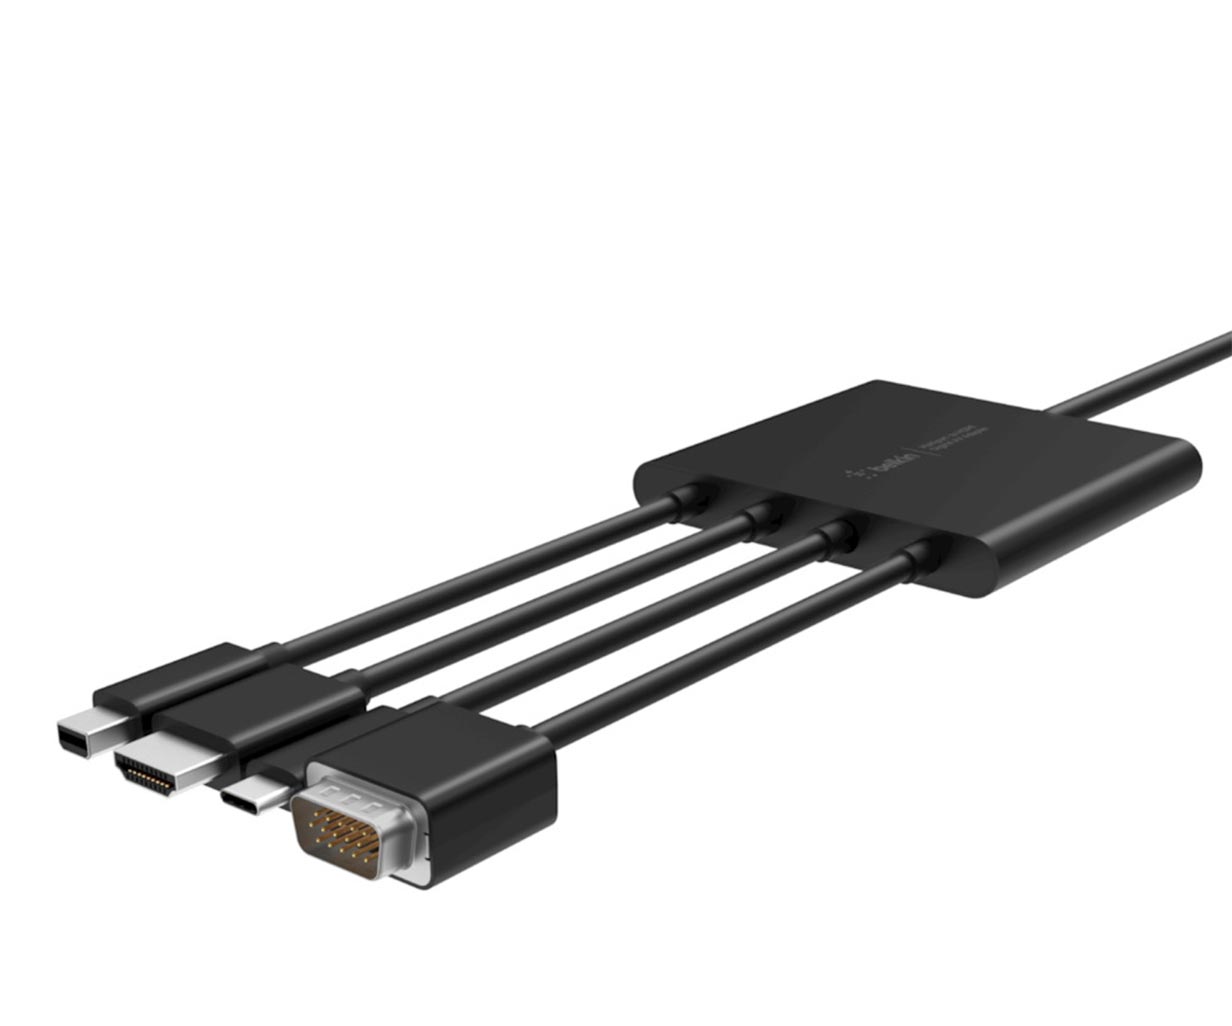 ベルキン、4K Ultra HDもサポートした「Multiport to HDMI Digital AV アダプタ(VGA、USB-C、HDMI、Mini DisplayPort)」を8月23日に発売